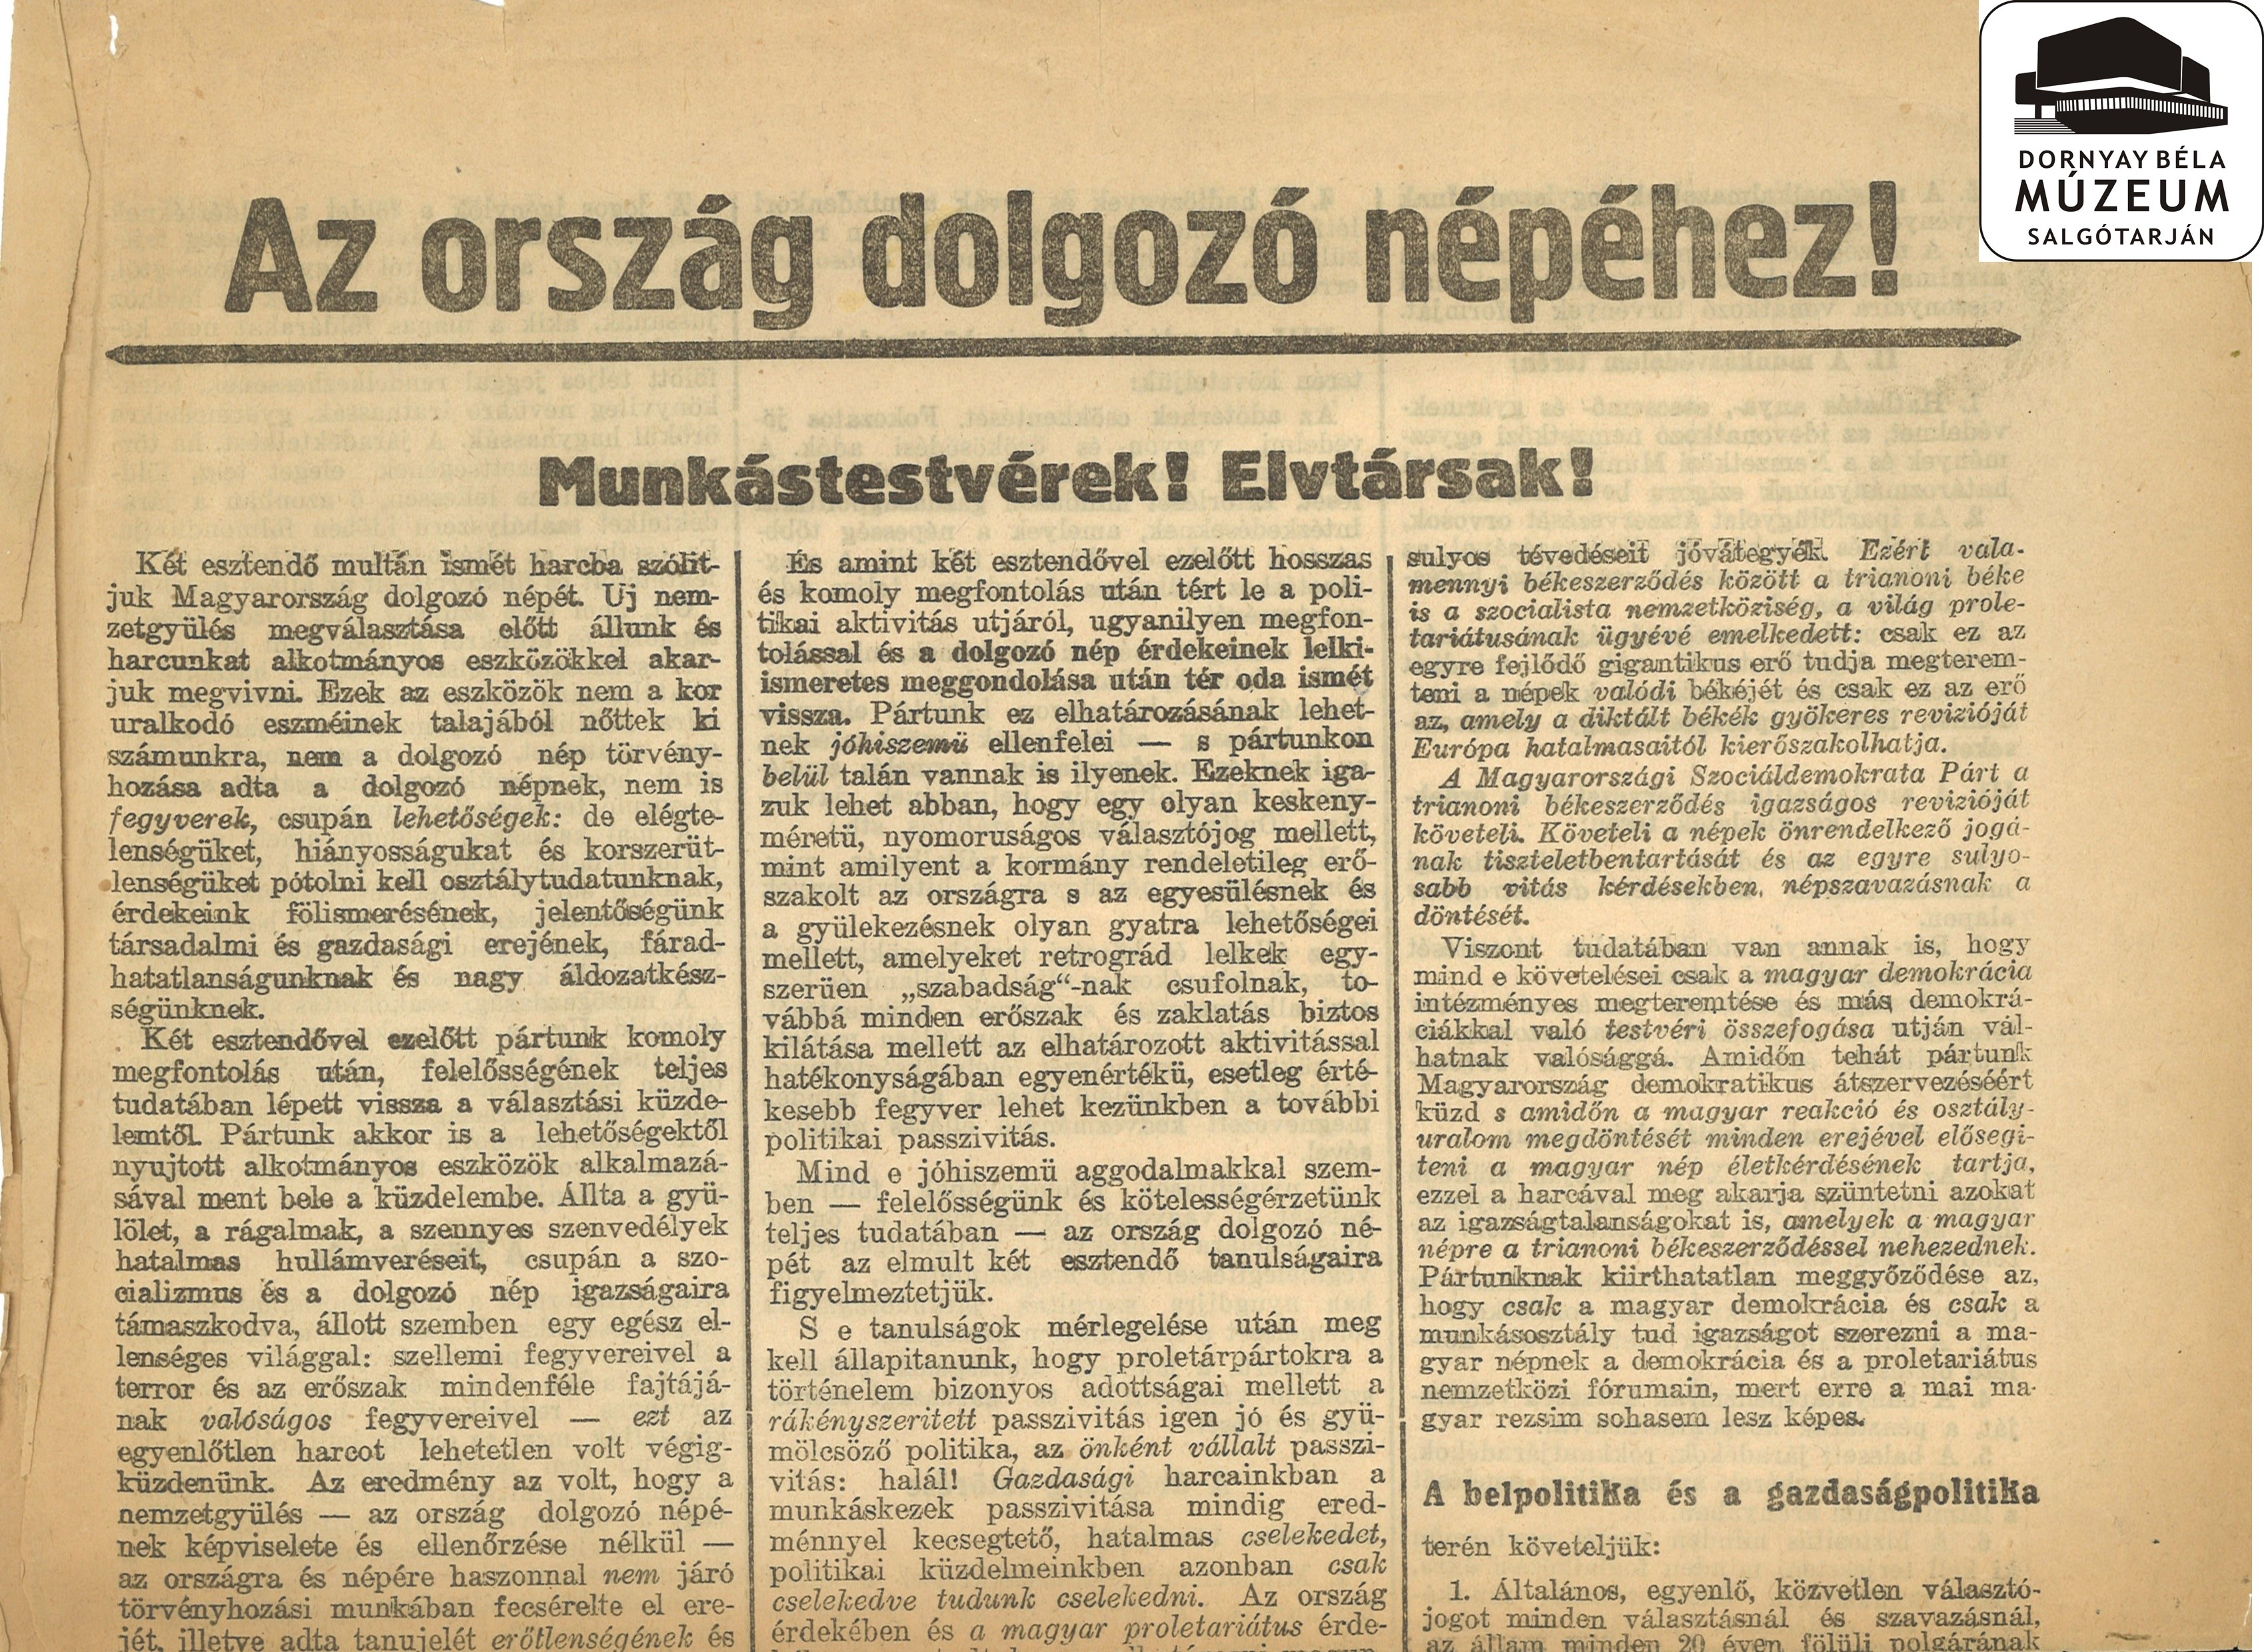 A Szociáldemokrata Párt felhívása az ország dolgozó népéhez (Dornyay Béla Múzeum, Salgótarján CC BY-NC-SA)